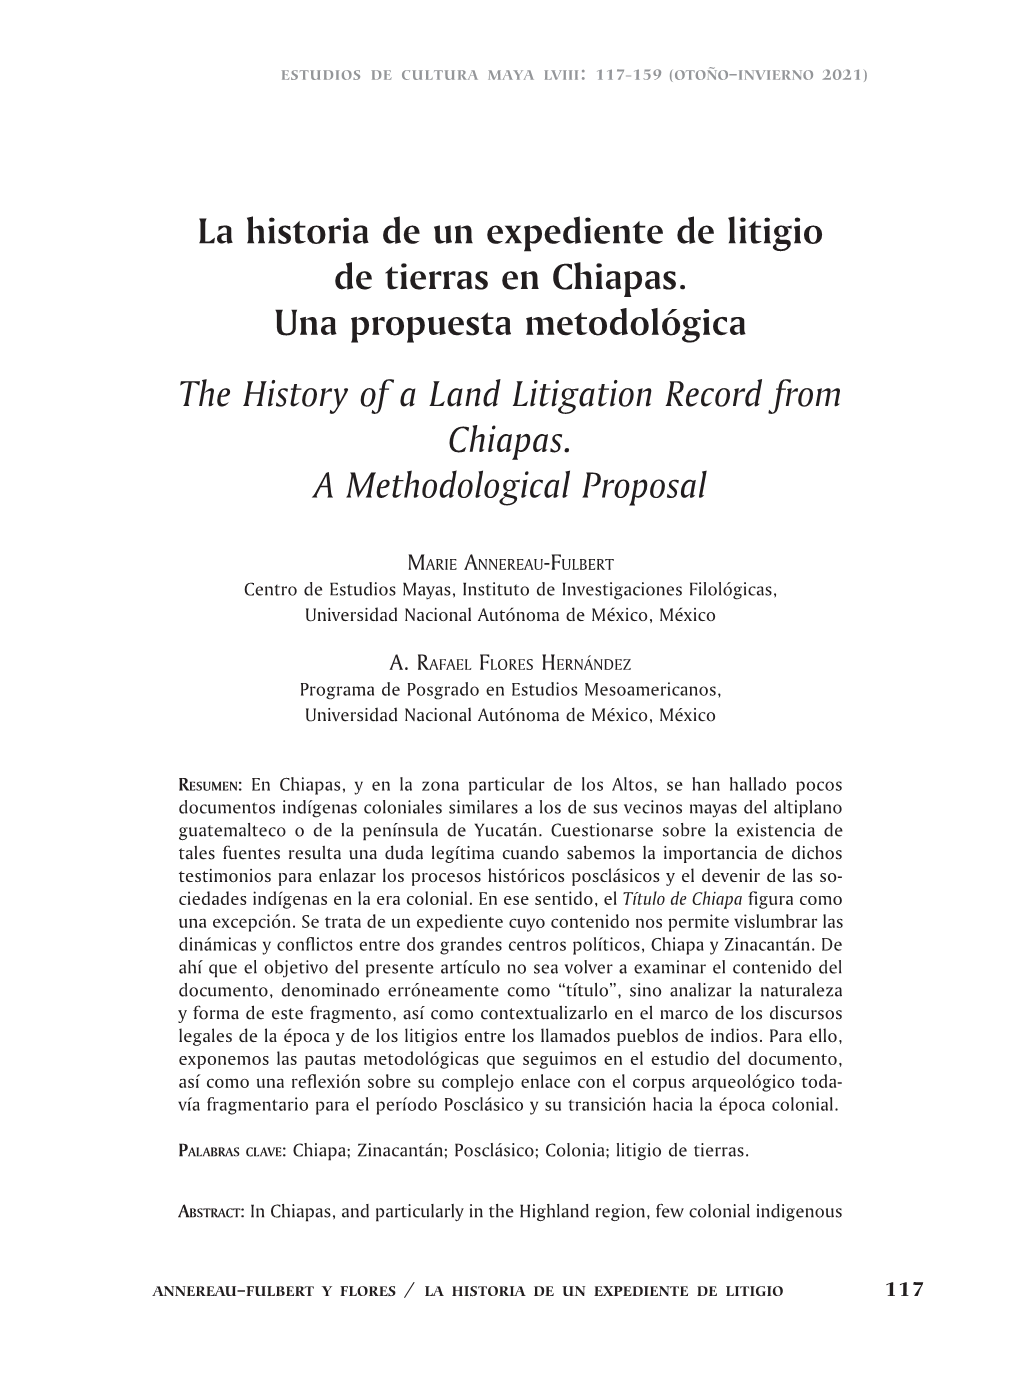 La Historia De Un Expediente De Litigio De Tierras En Chiapas. Una Propuesta Metodológica the History of a Land Litigation Record from Chiapas